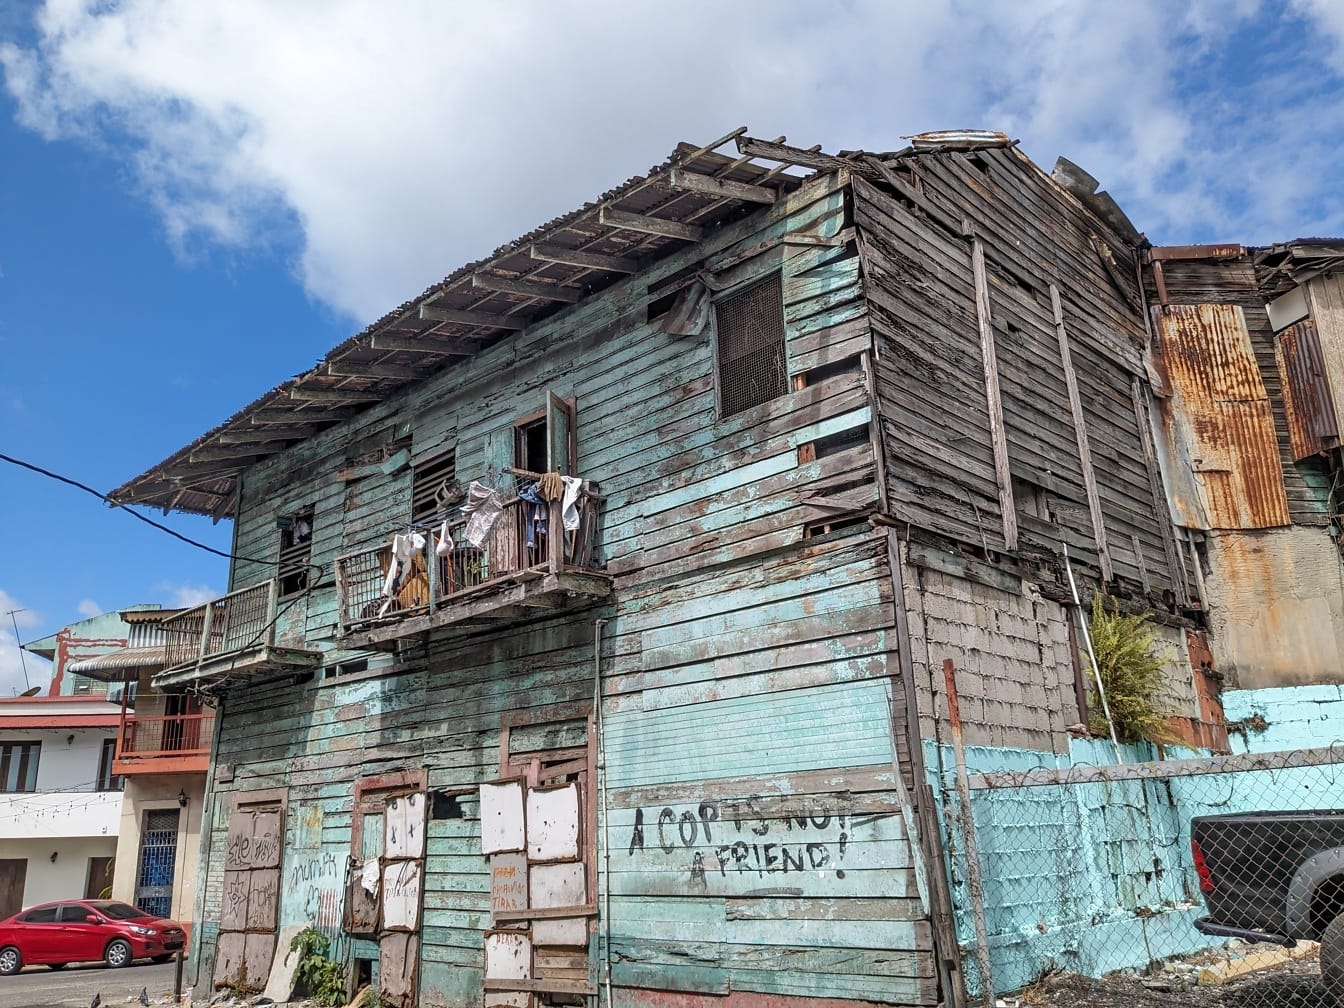 Vieille maison abandonnée avec des graffitis sur le côté dans un quartier pauvre de la ville